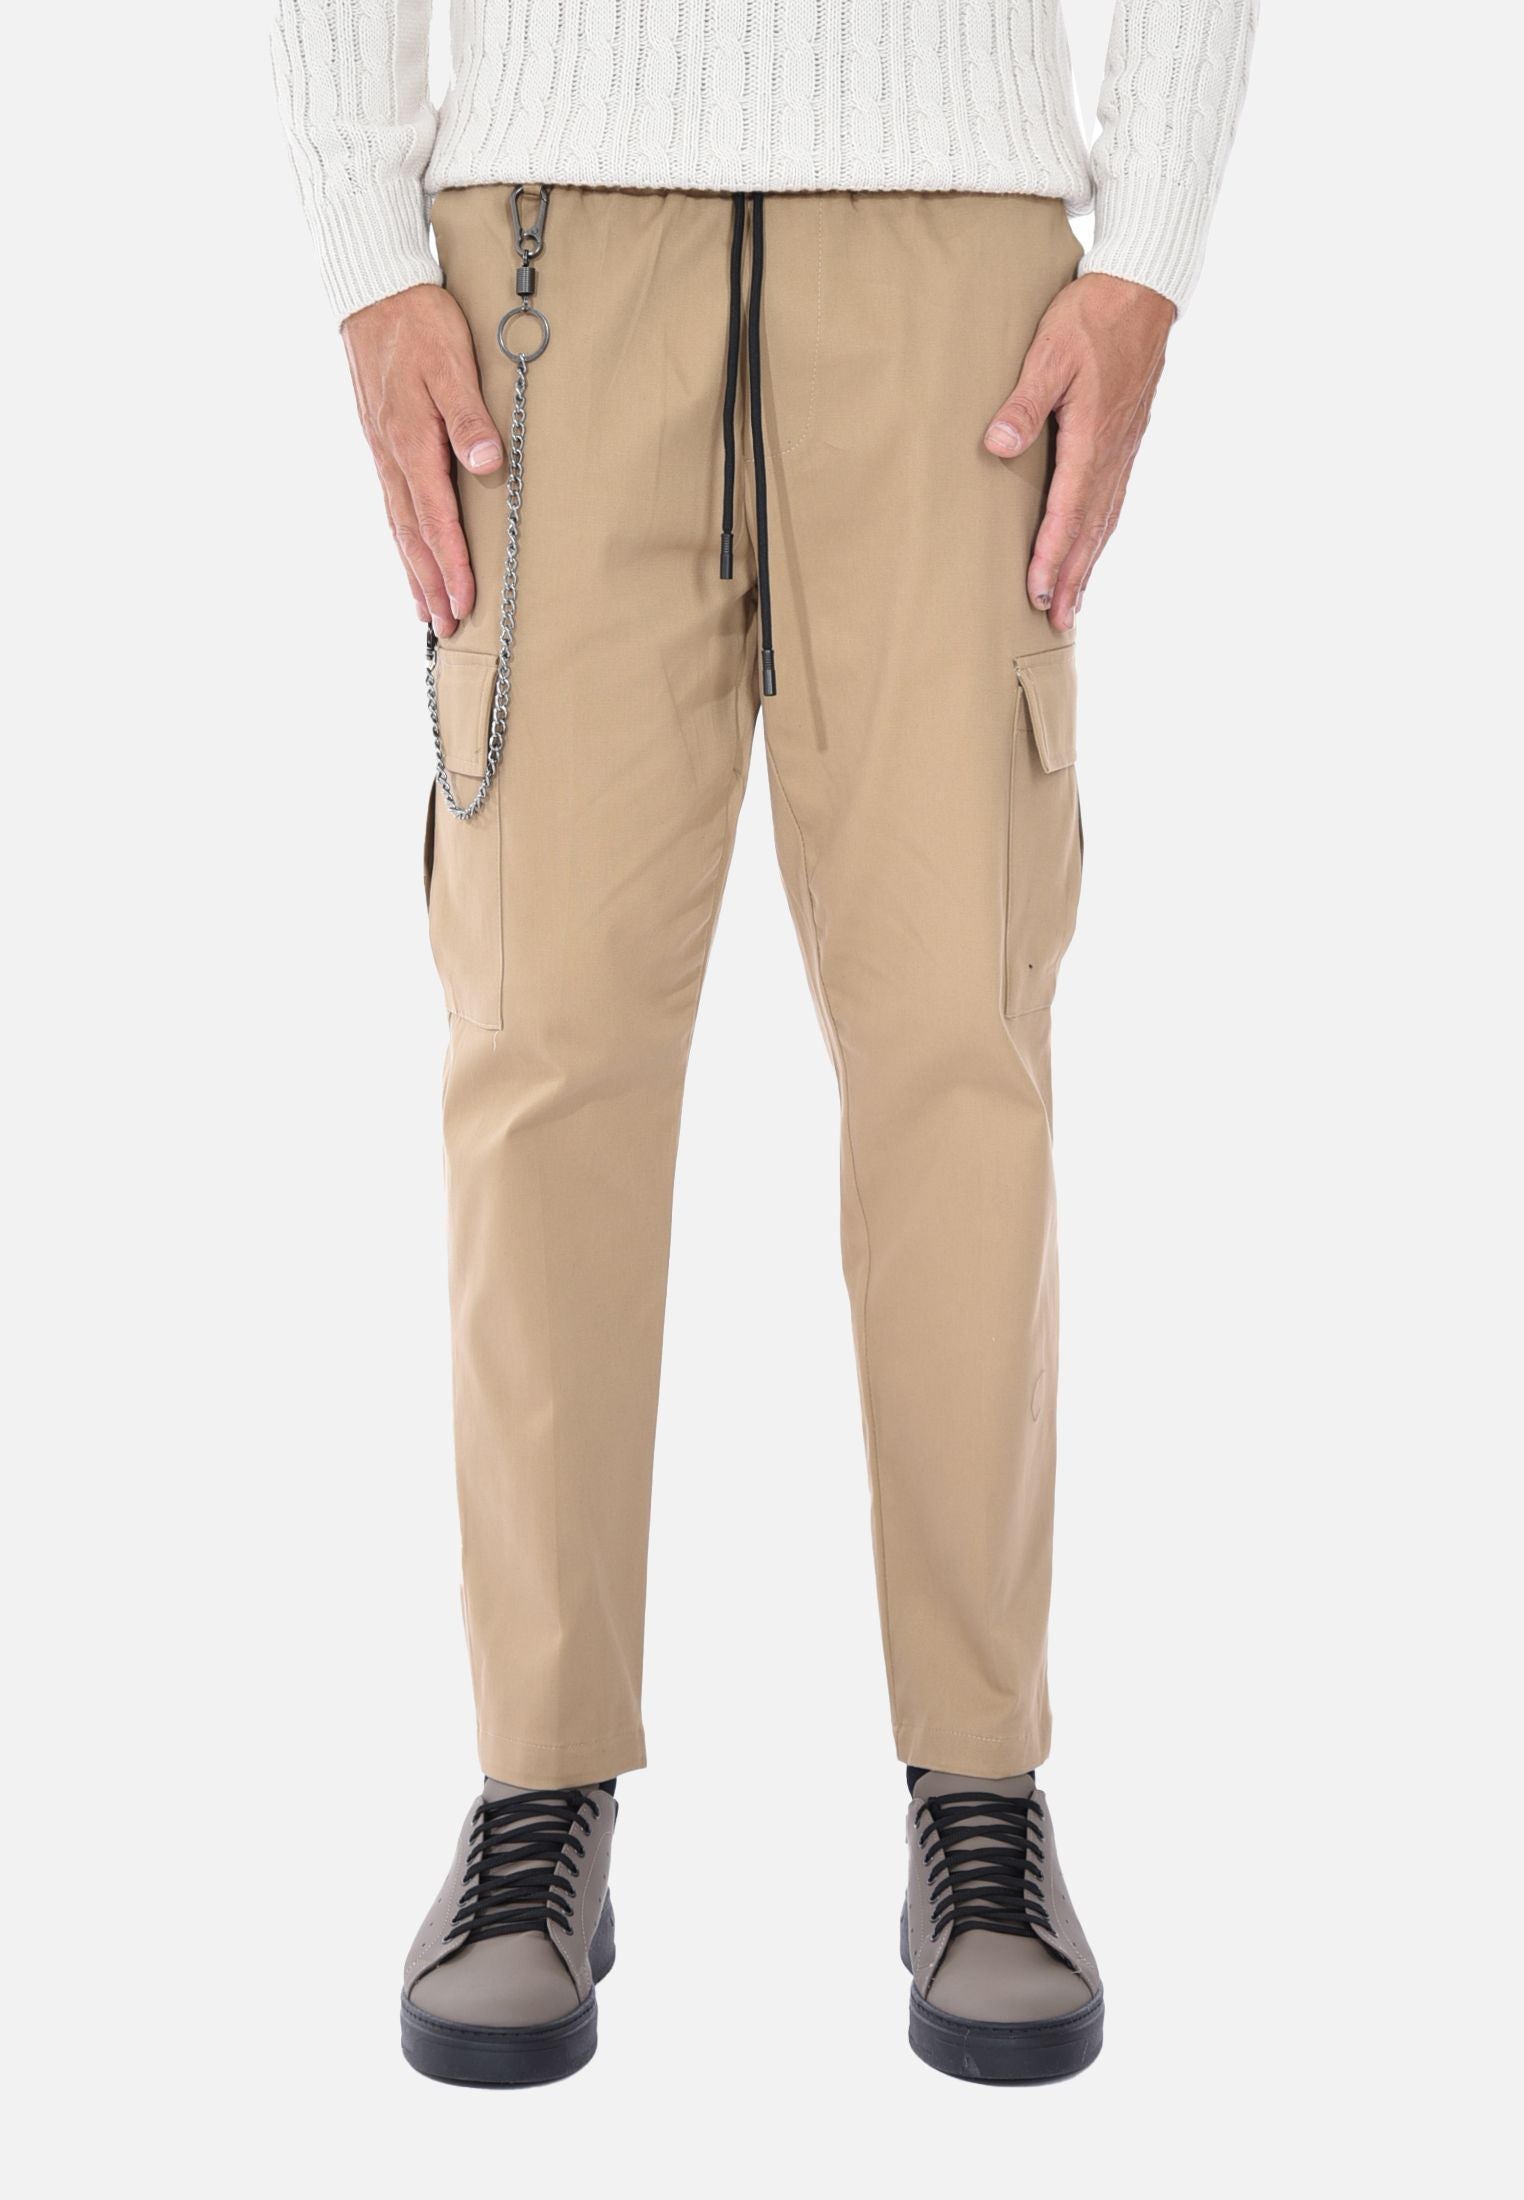 Pantalon cargo chaud d'hiver pour homme avec poches et taille élastiquée